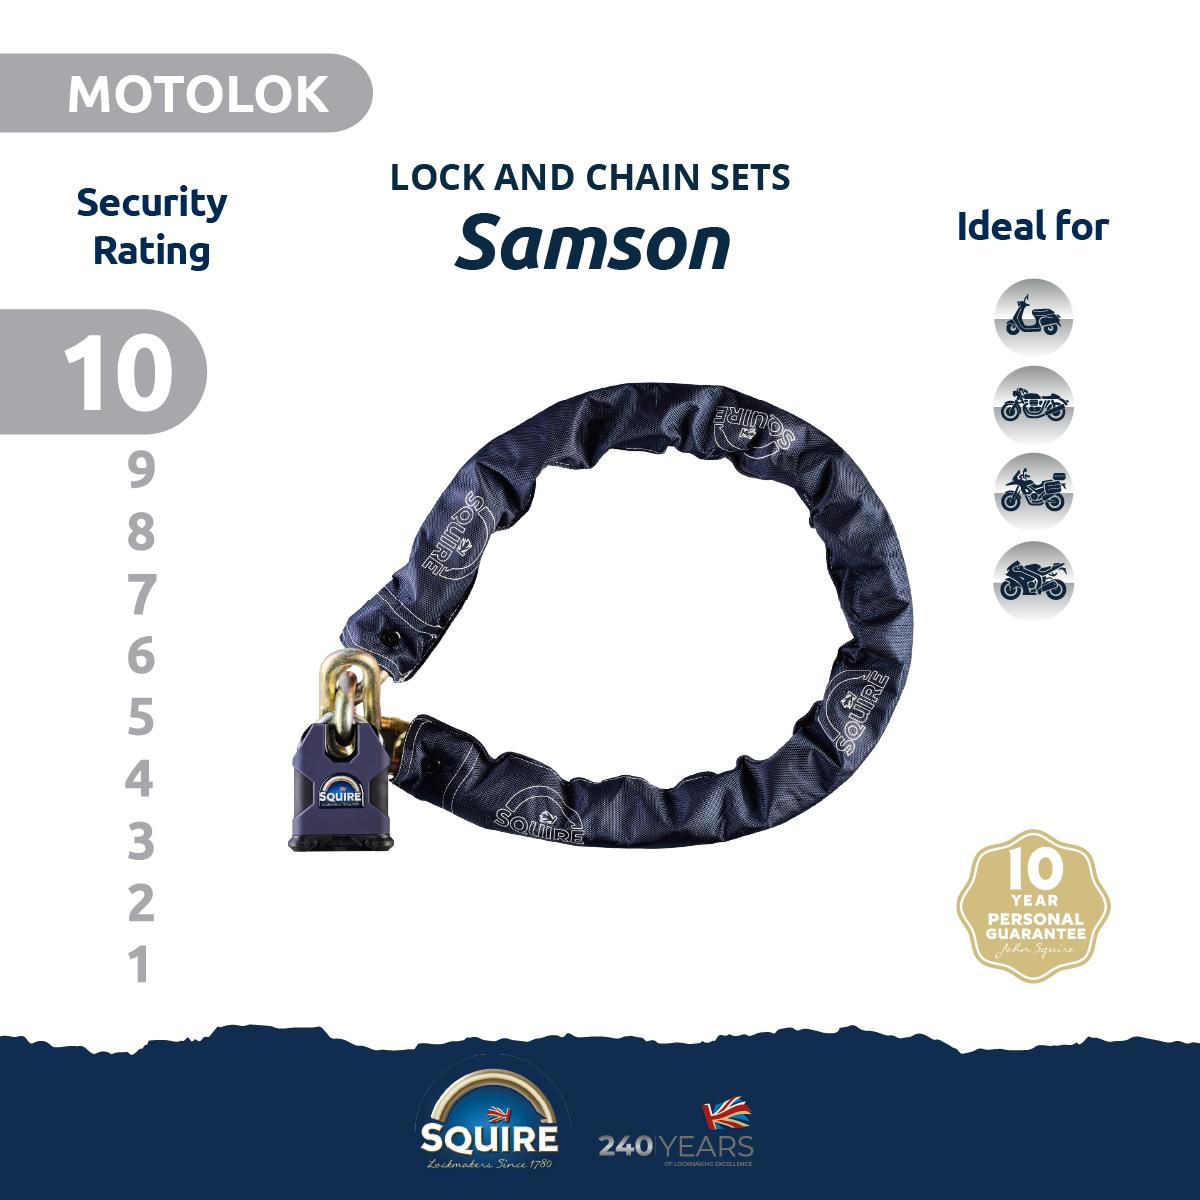 Samson Padlock and Chain Set